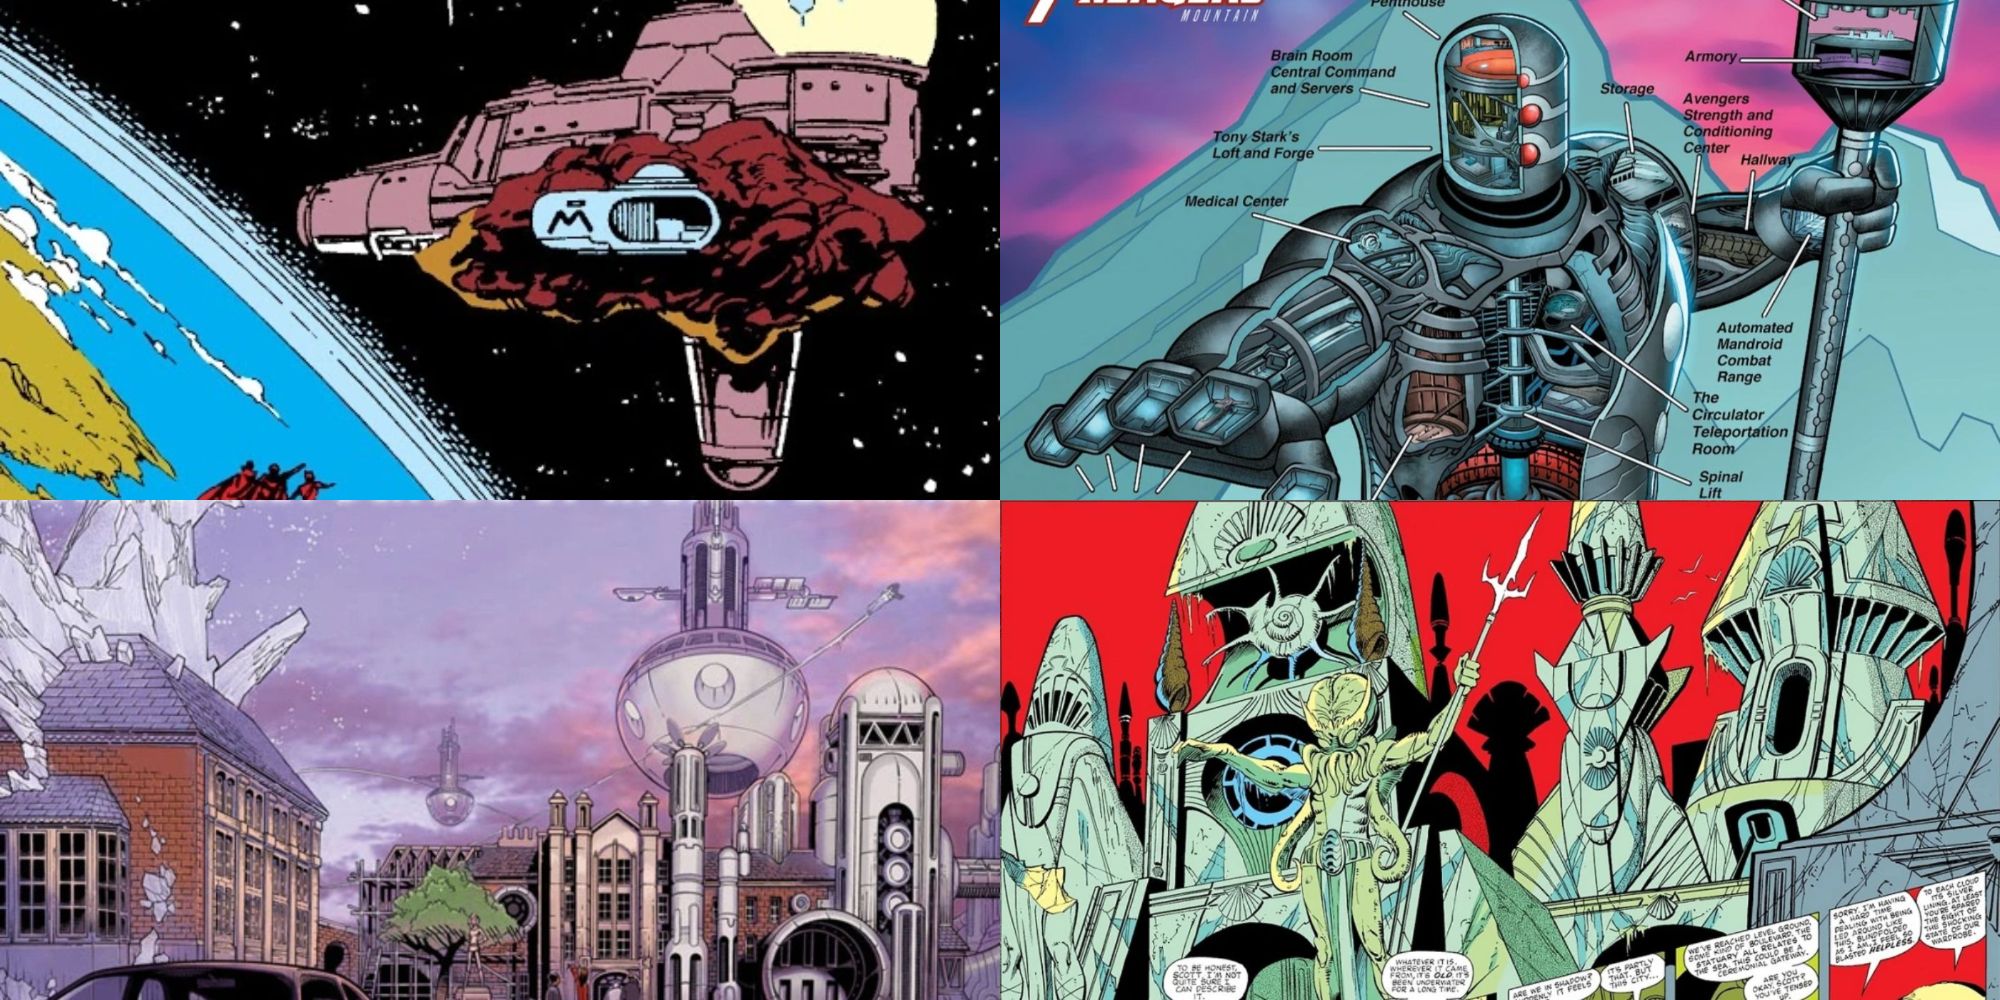 Coolest secret bases in Marvel Comics - 4 collaged images